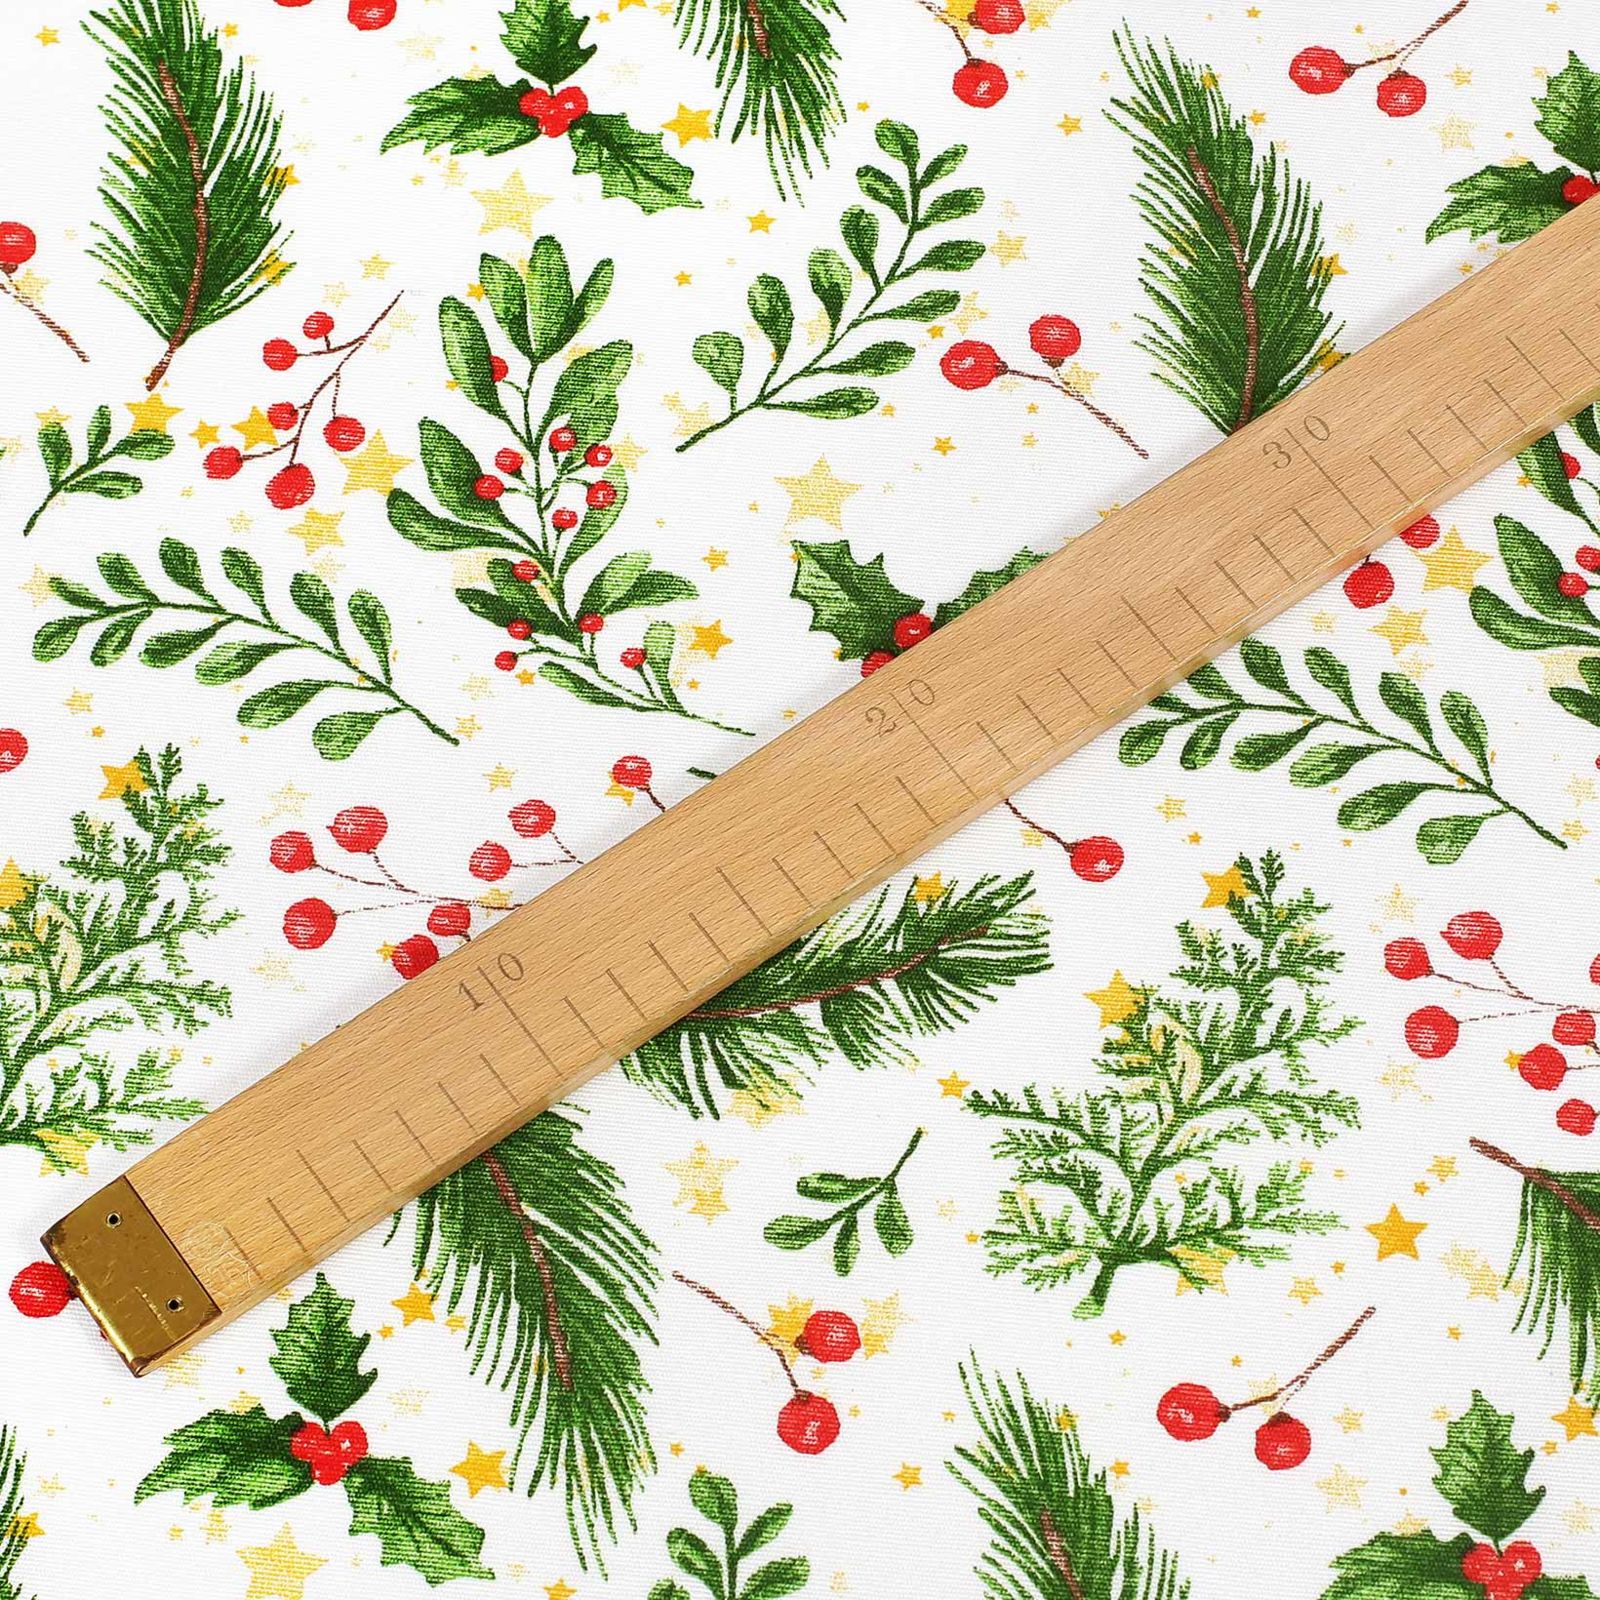 Vánoční dekorační látka Loneta - jmelí s větvičkami